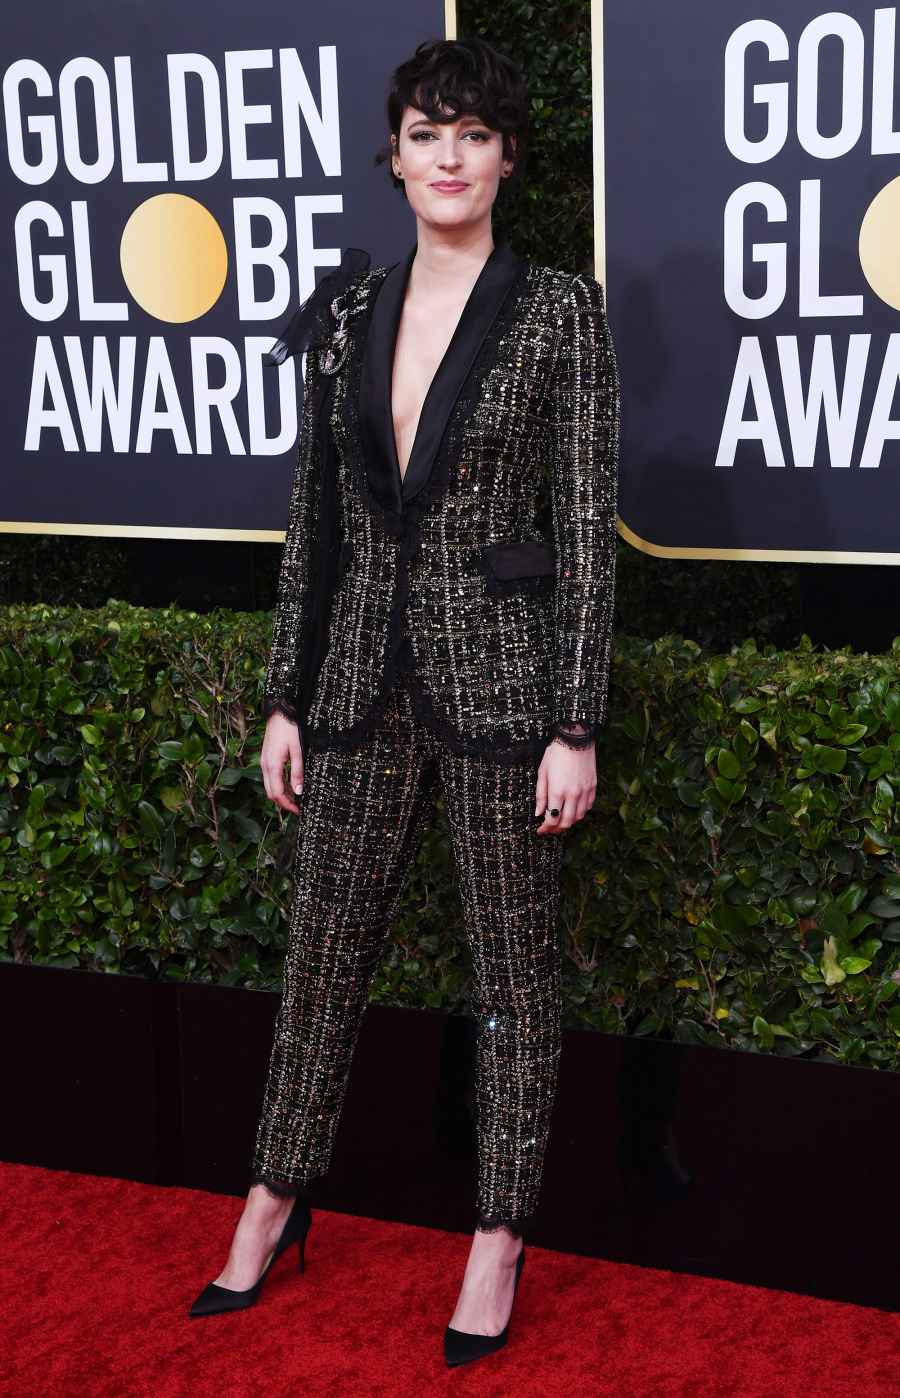 Golden Globes 2020 - Phoebe Waller Bridge